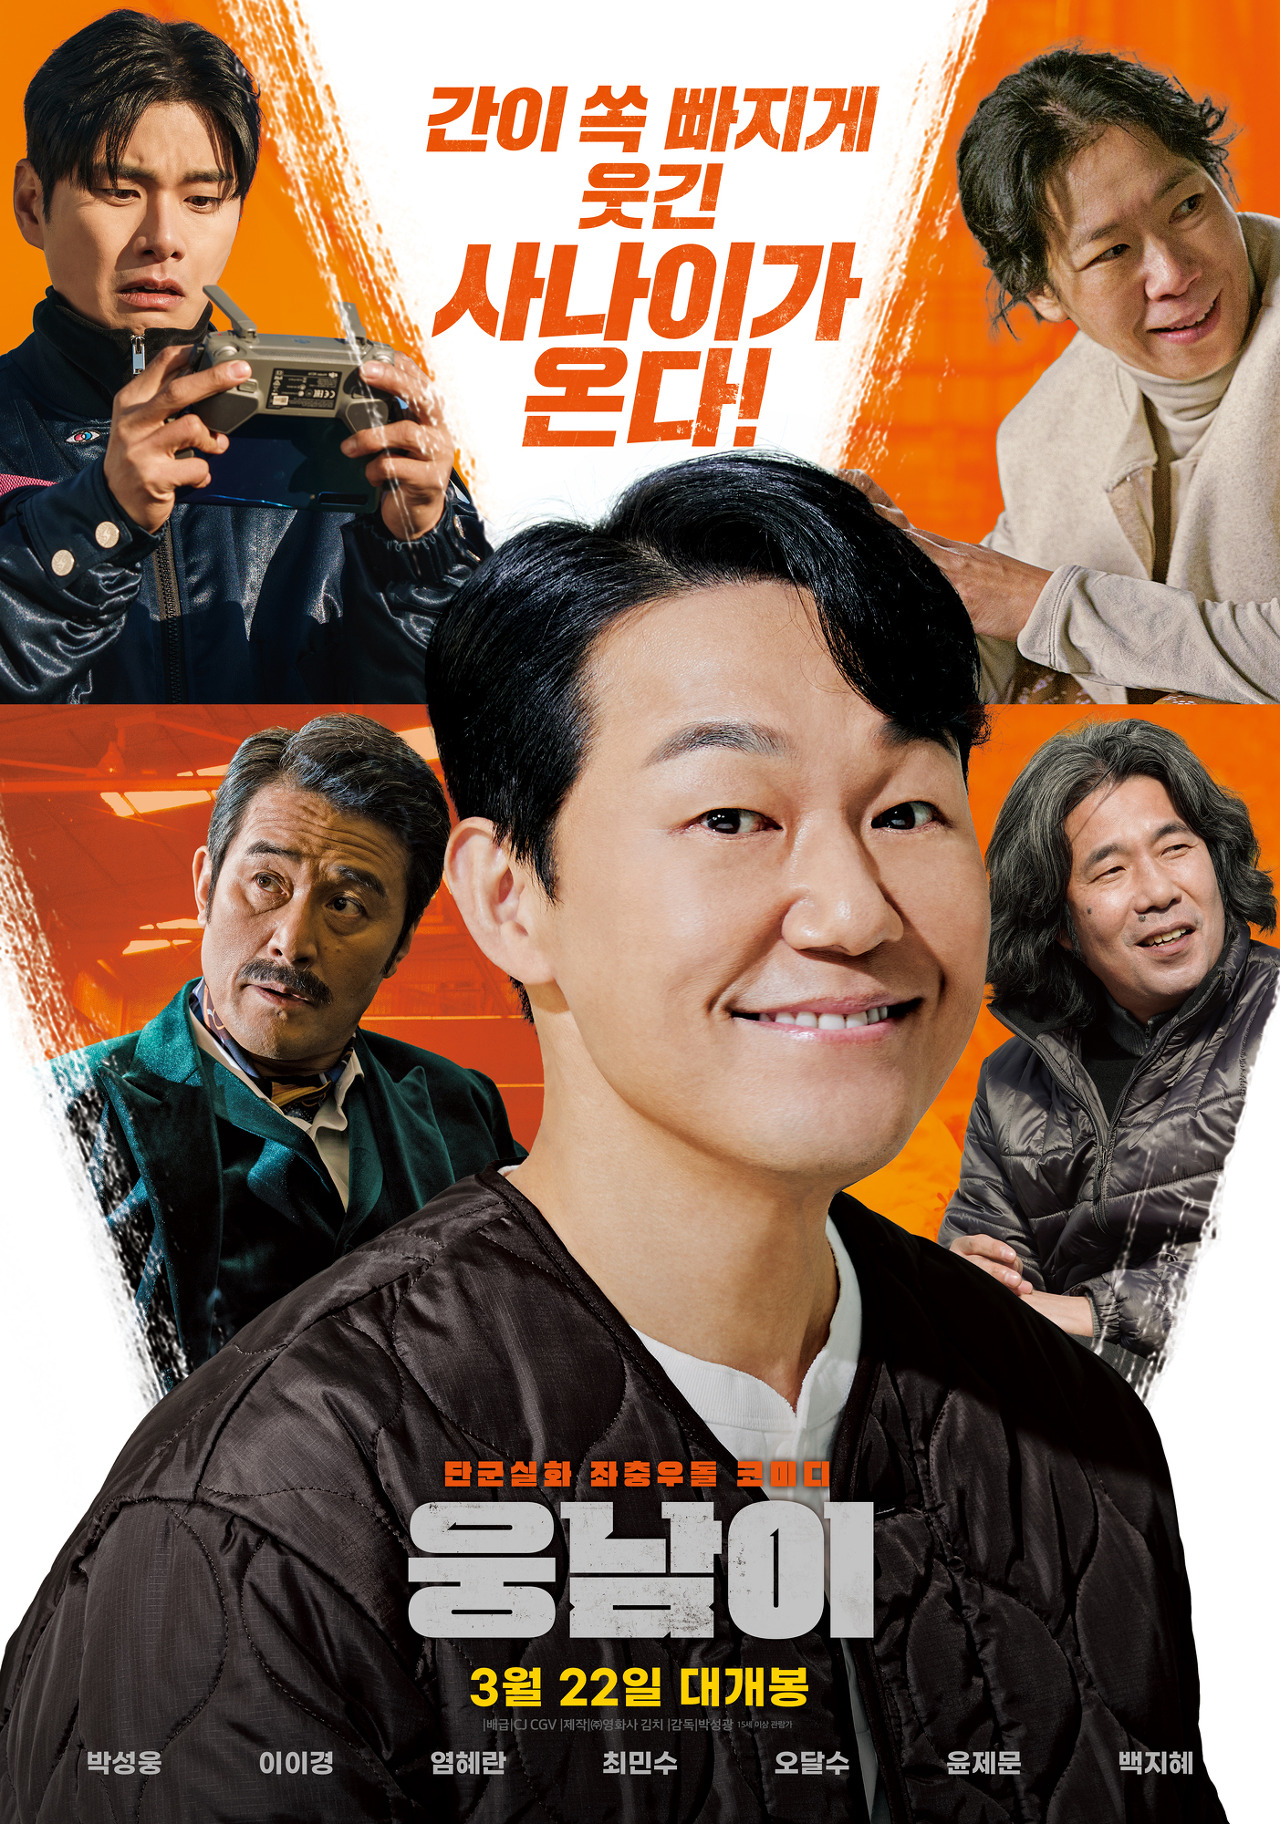 주황색 배경에 주연 배우들의 모습이 나온 영화 &quot;웅남이&quot; 포스터